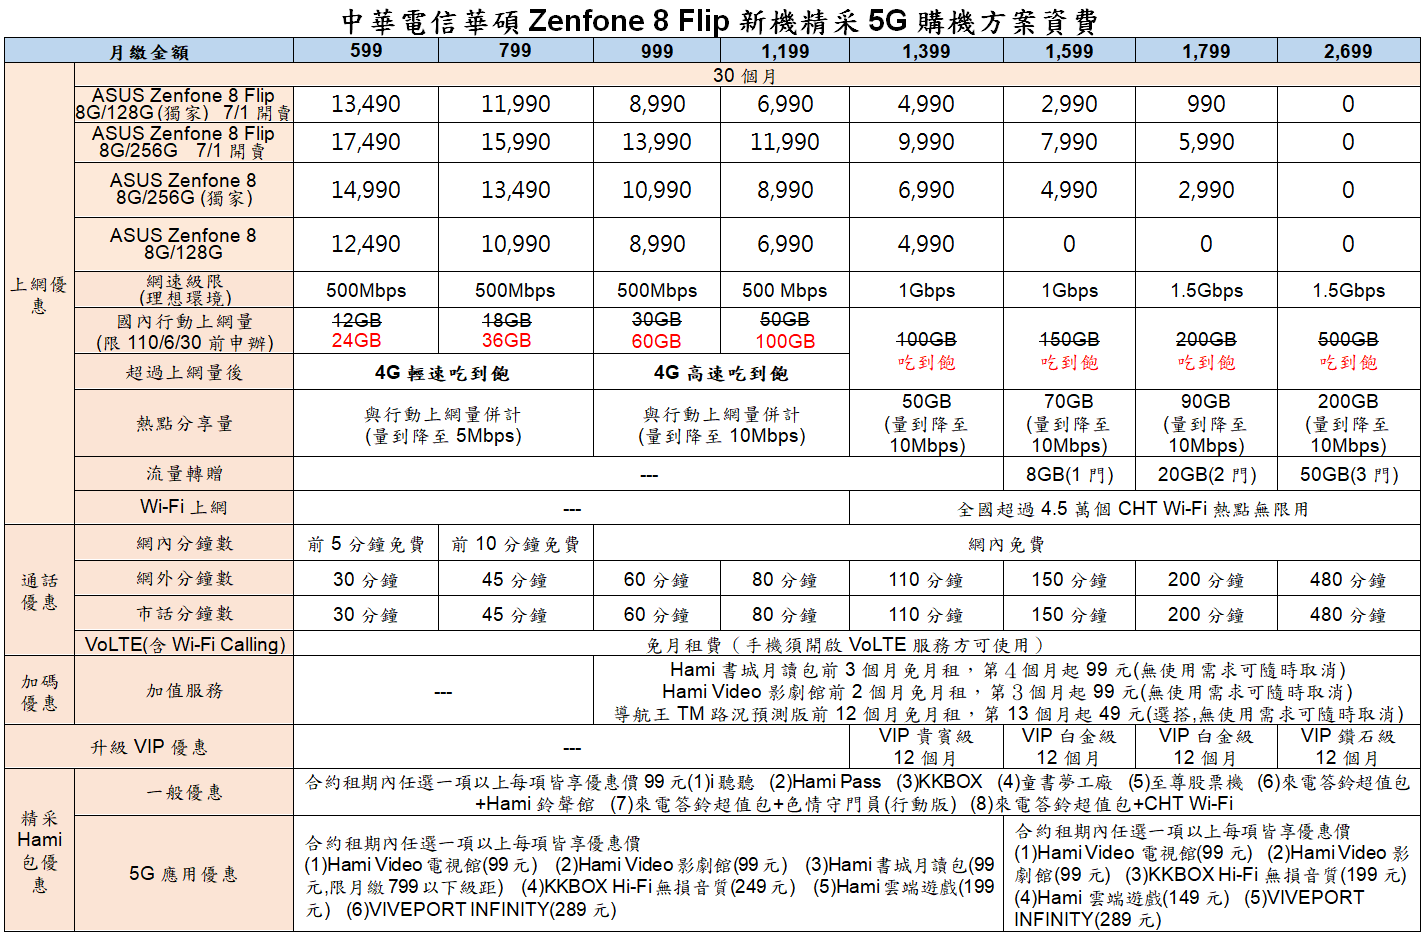 螢幕擷取畫面 2021 07 02 031304 - 中華電信 7 月 1 日獨家開賣華碩 Zenfone 8 Flip 128G